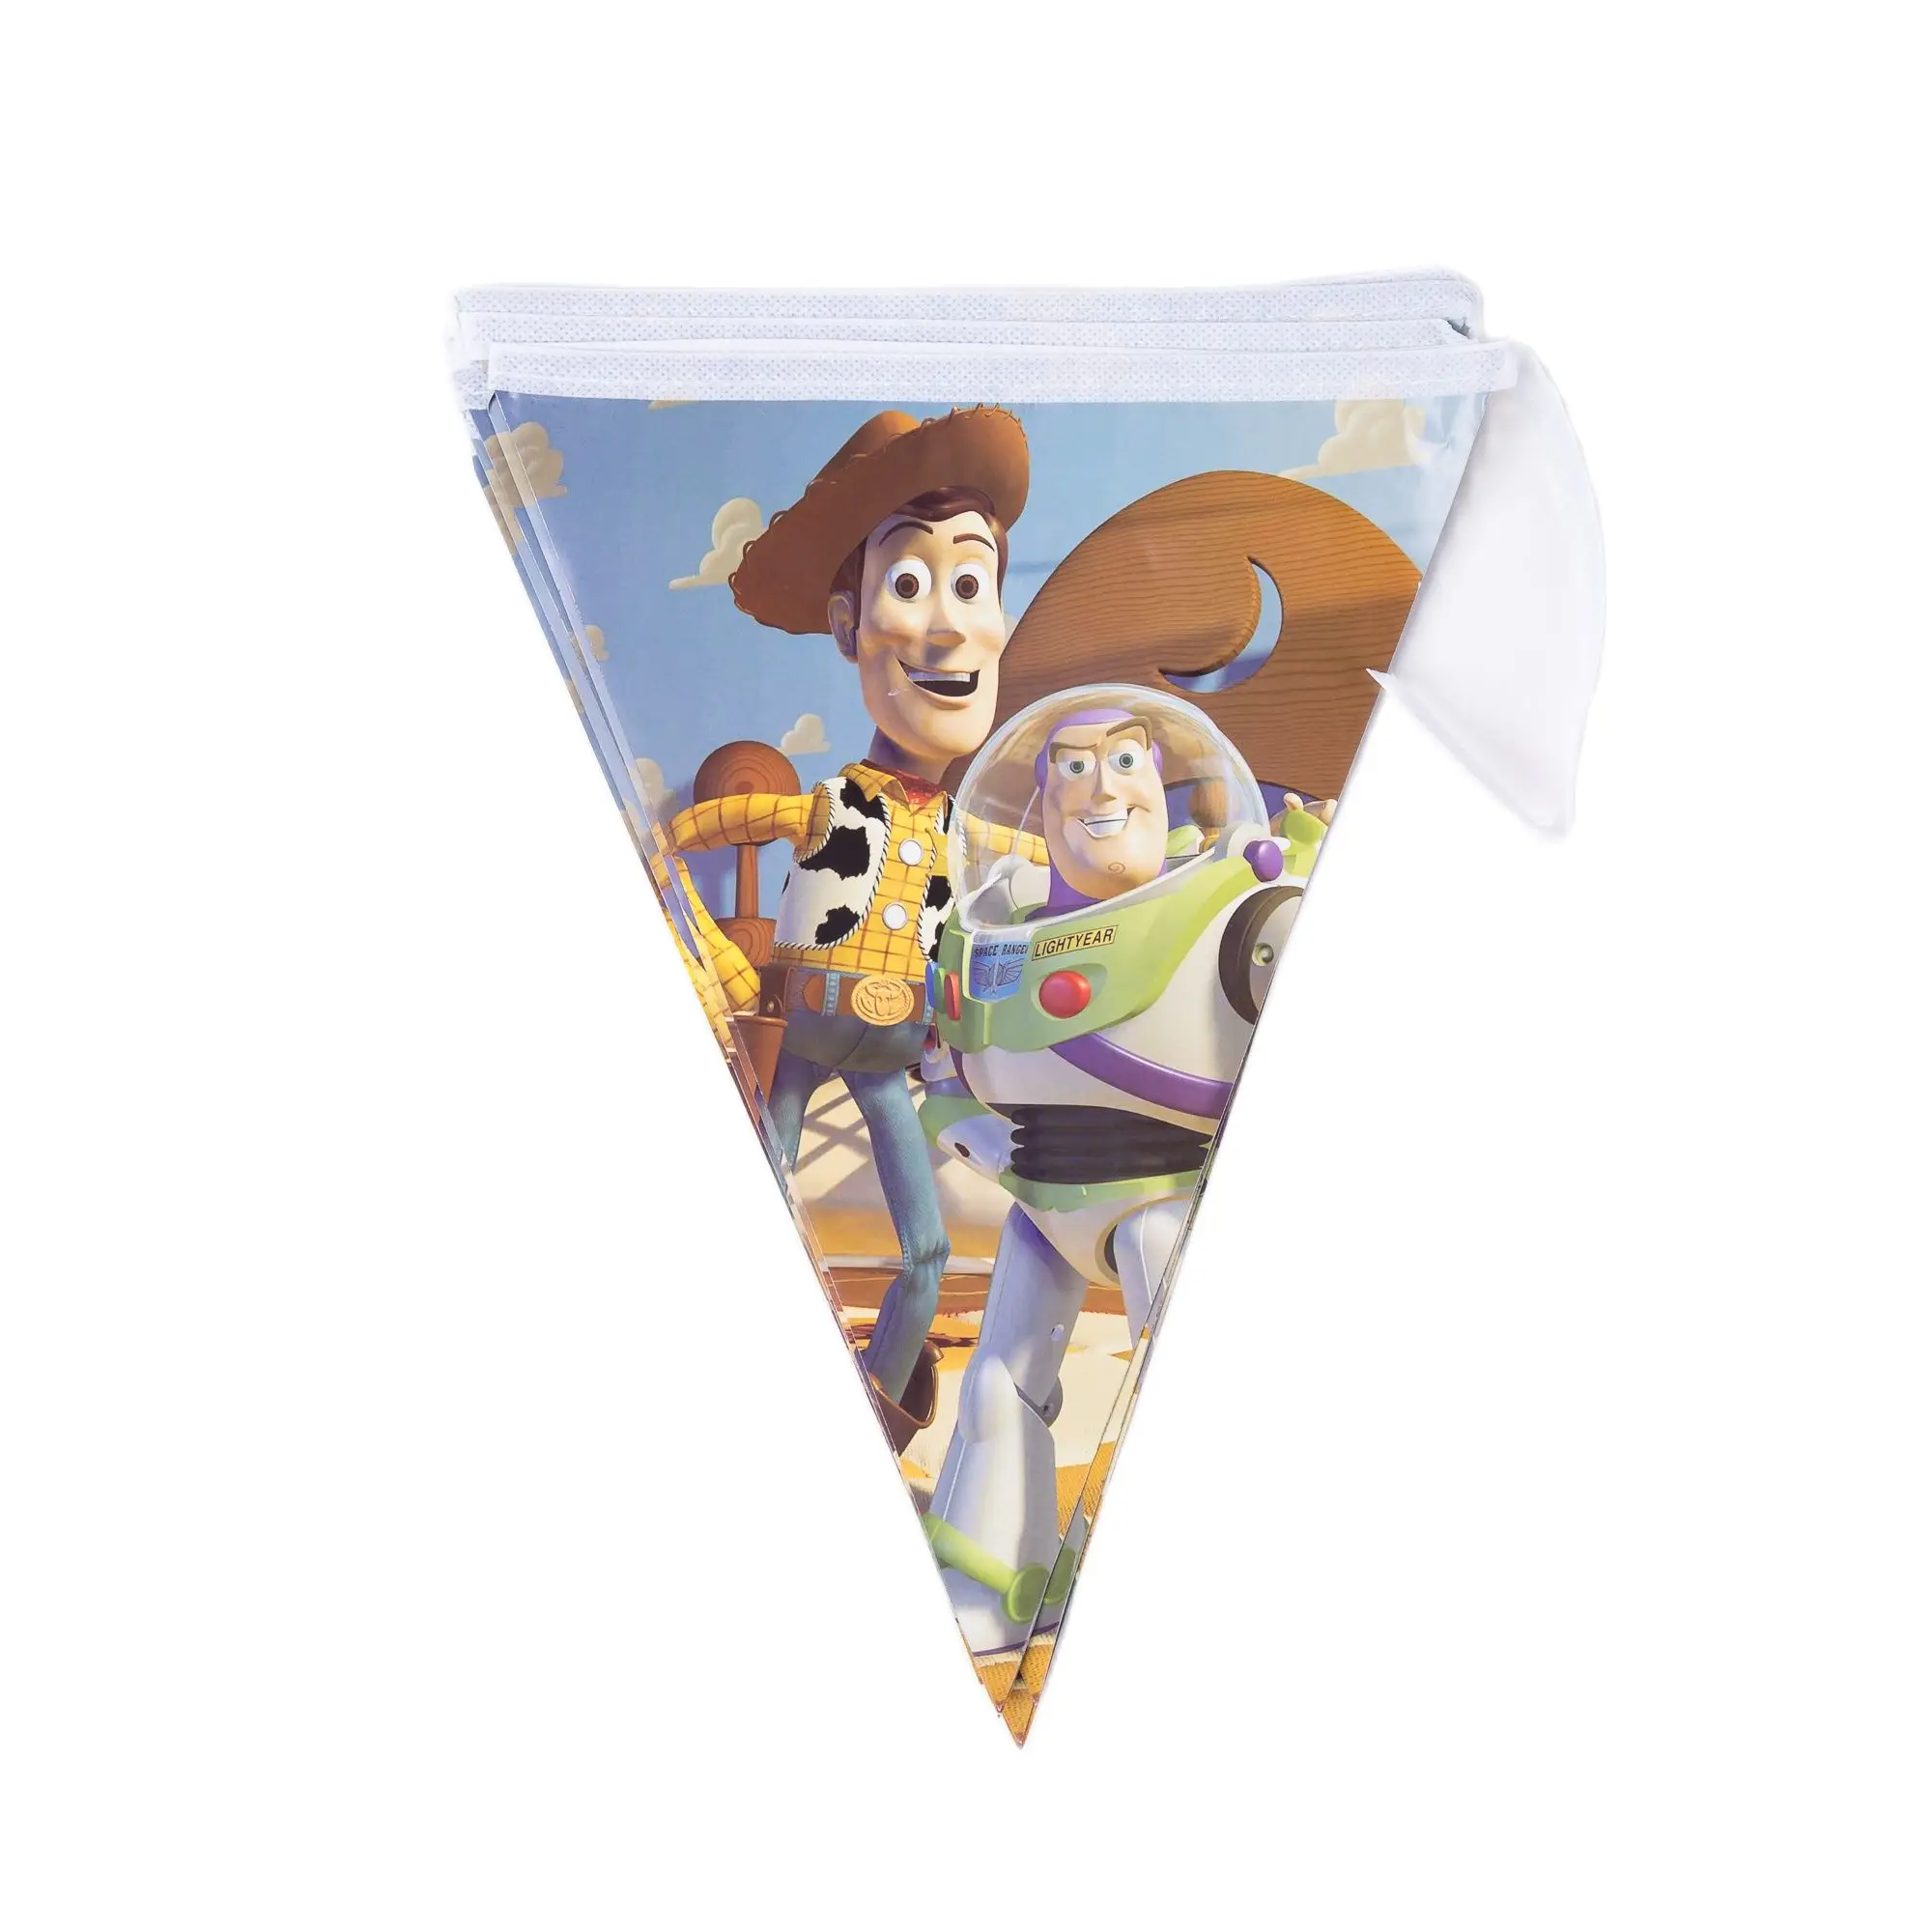 Toy story disney témájú party dekoráció, 6 fő poharak, tányérok ， zászló, szalvéta，baba zuhany, szívószál，szülinapi parti dekoráció Kép 3